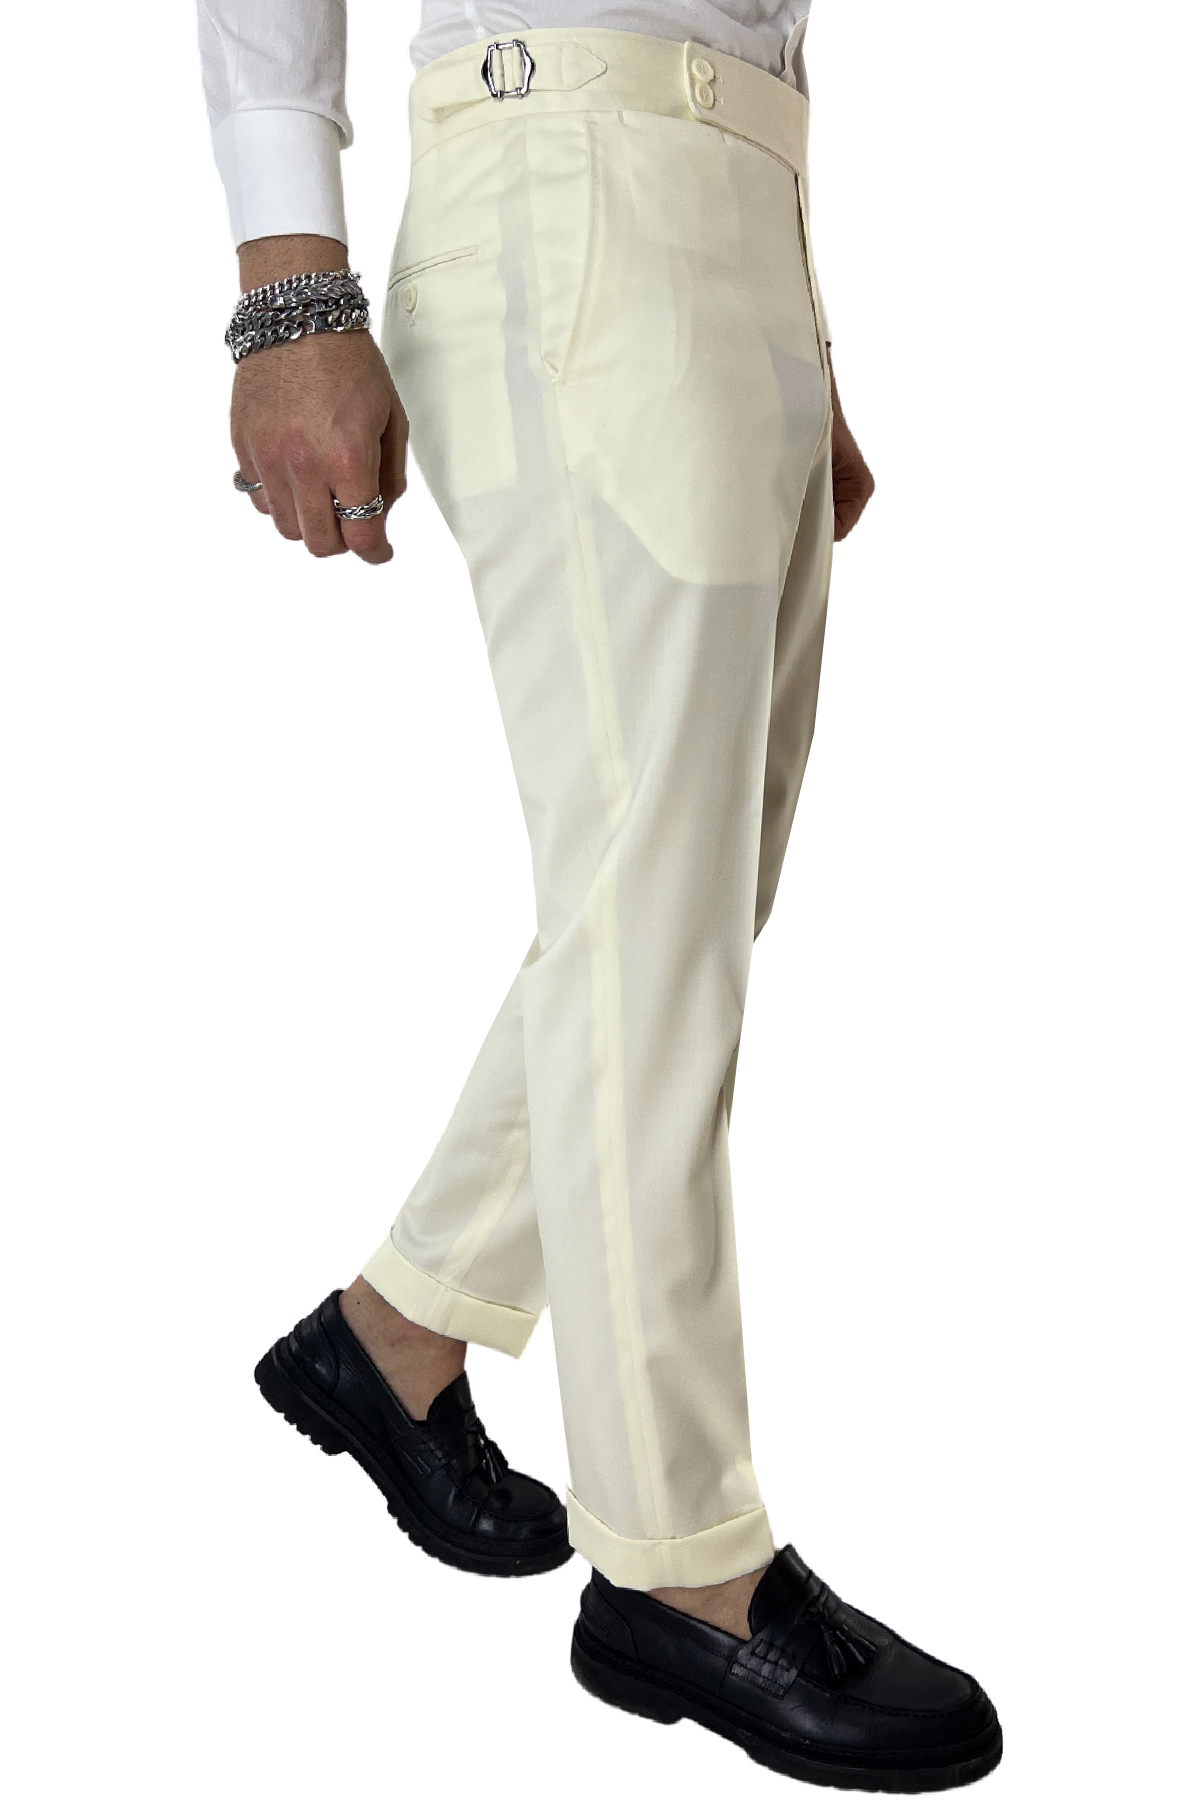 Pantalone uomo bianco vita alta tasca america in fresco lana 100% Vitale Barberis Canonico fibbie laterali e risvolto 4cm